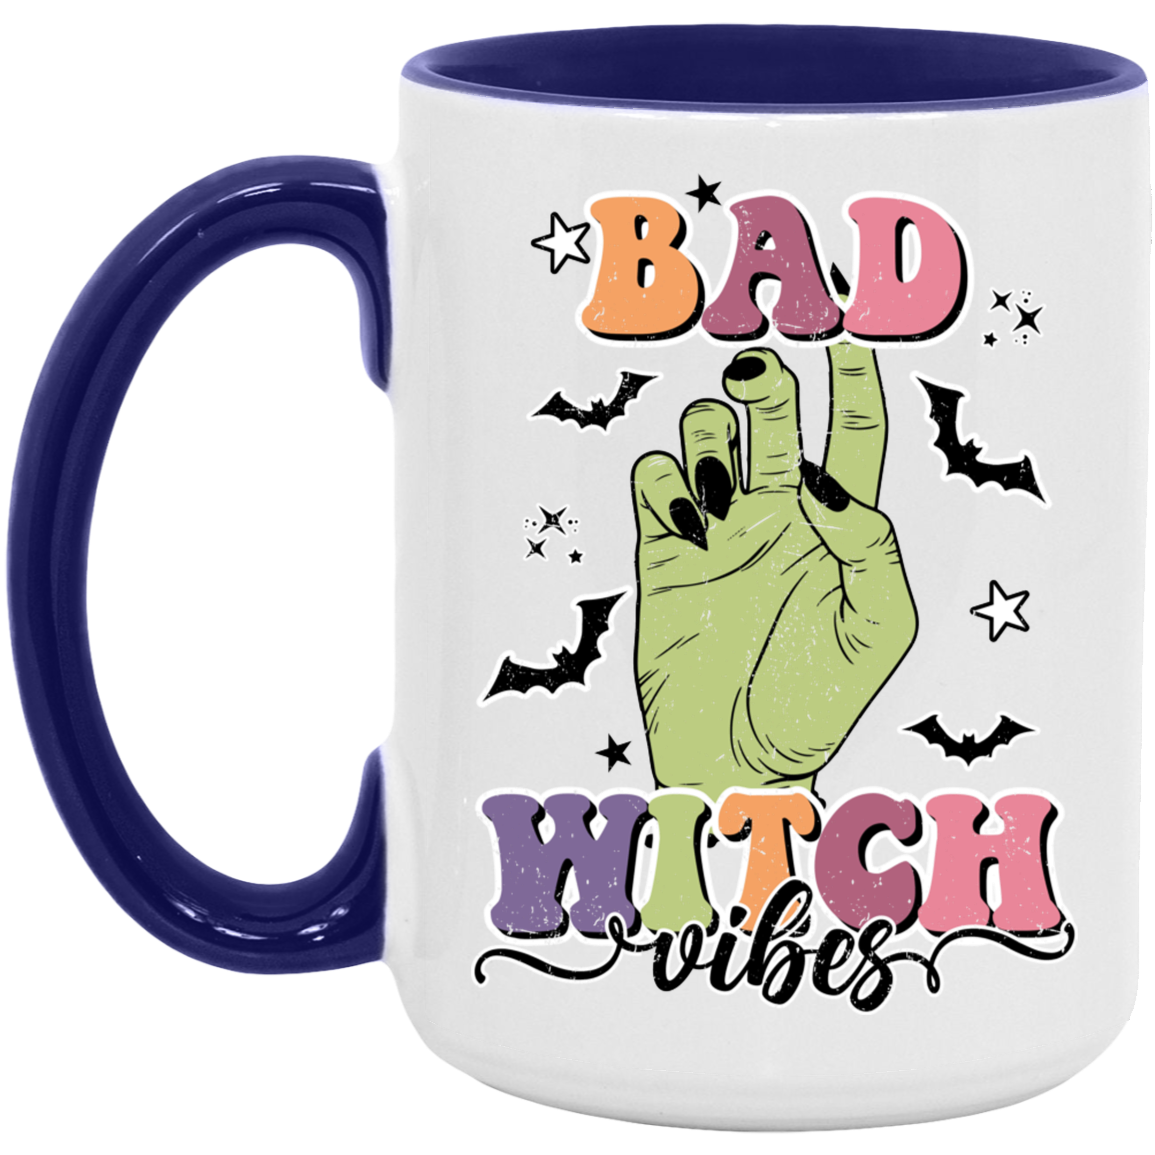 Bad Witch Vibes Mug